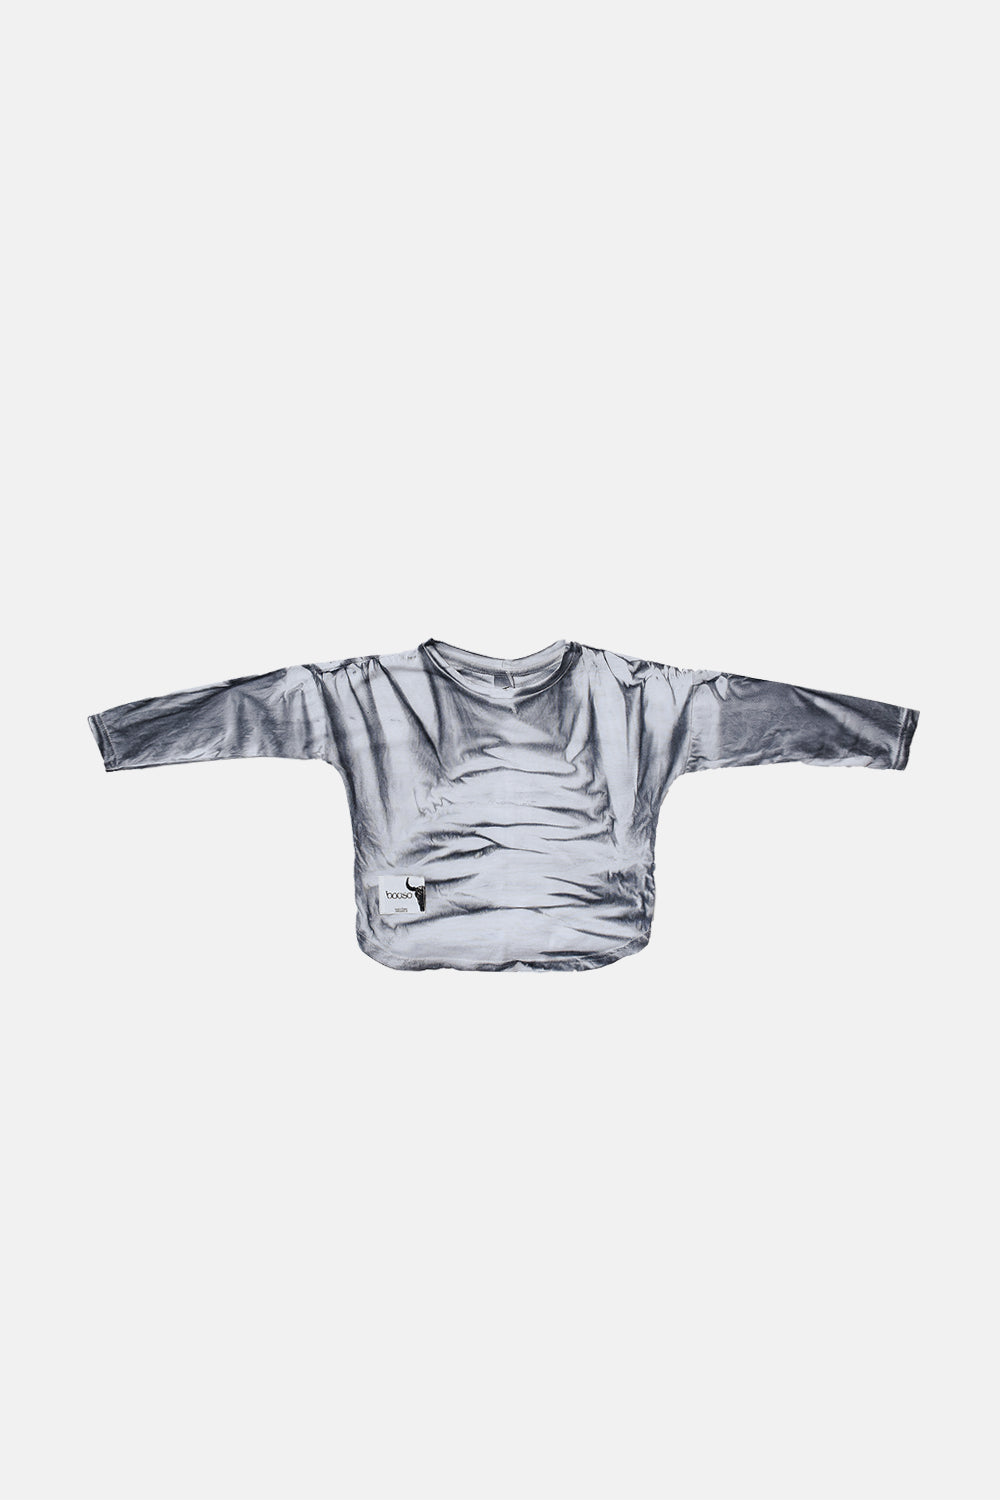 koszulka dziecięca- CLASSIC LONG gray tiedye